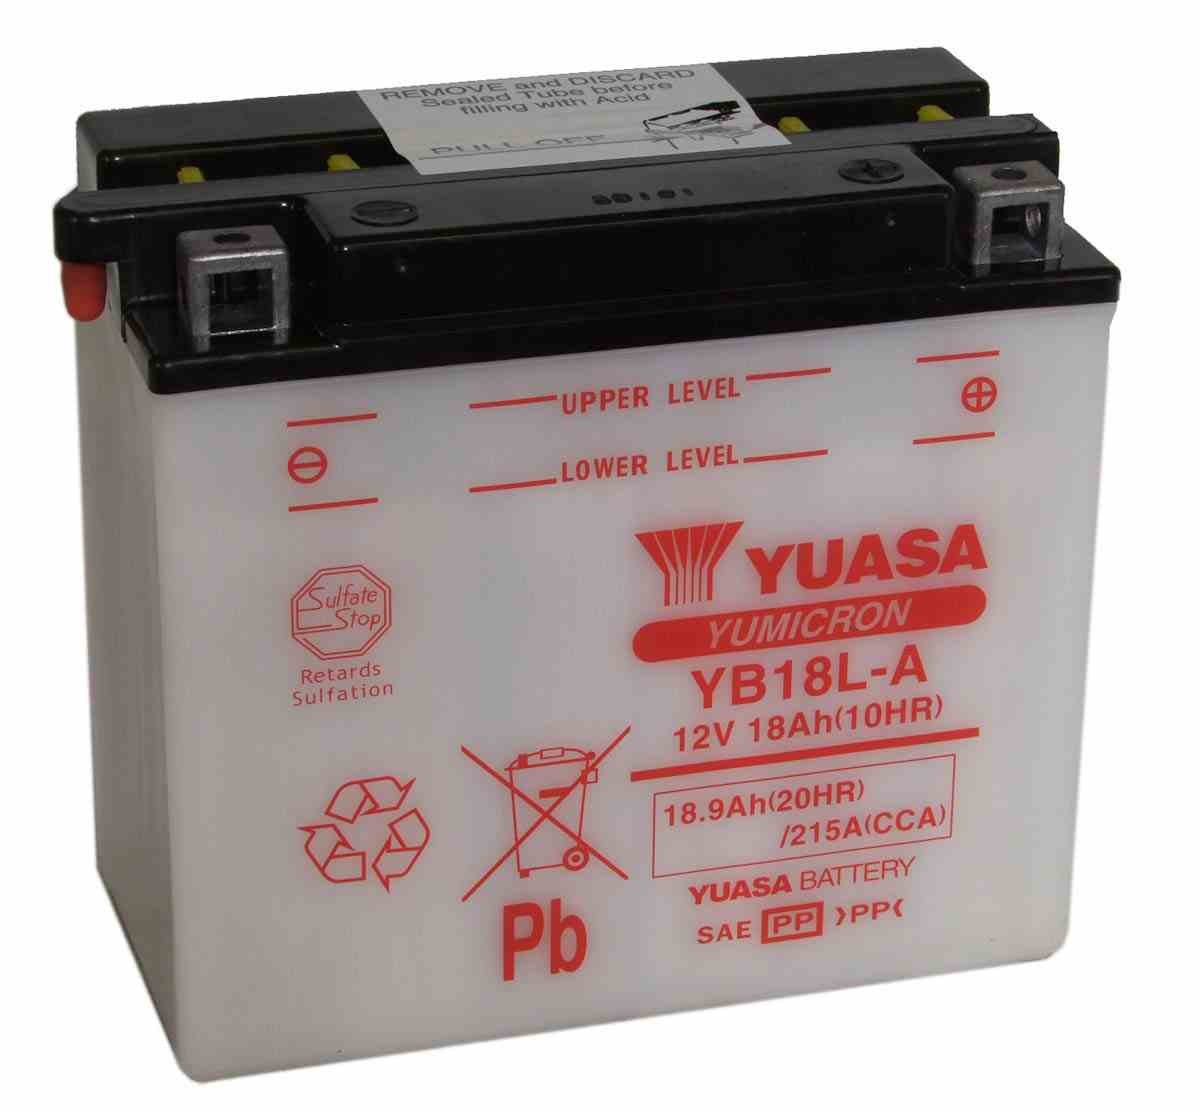 Bateria para moto o ciclomotor marca YUASA modelo YB18L-A de 12v 18Ah